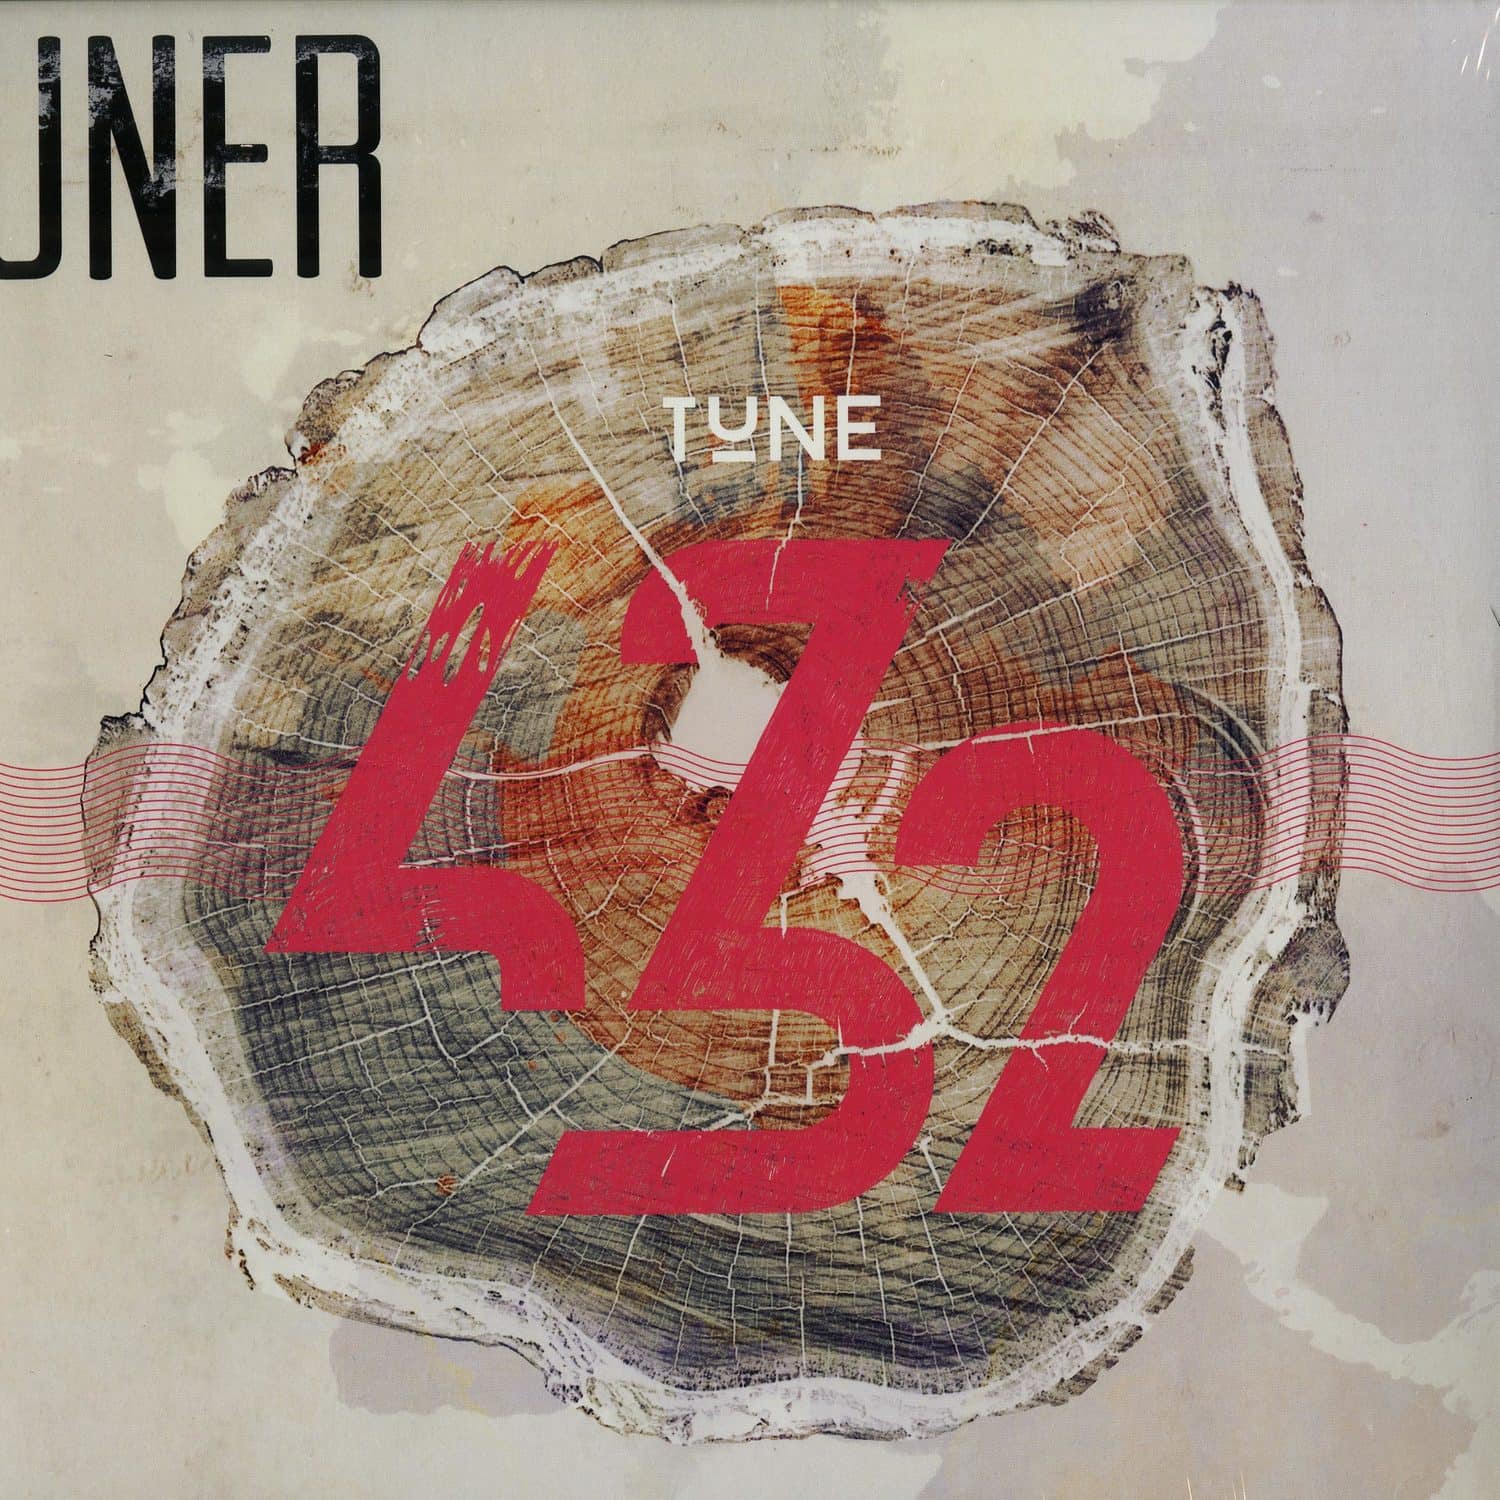 Uner - TUNE 432 